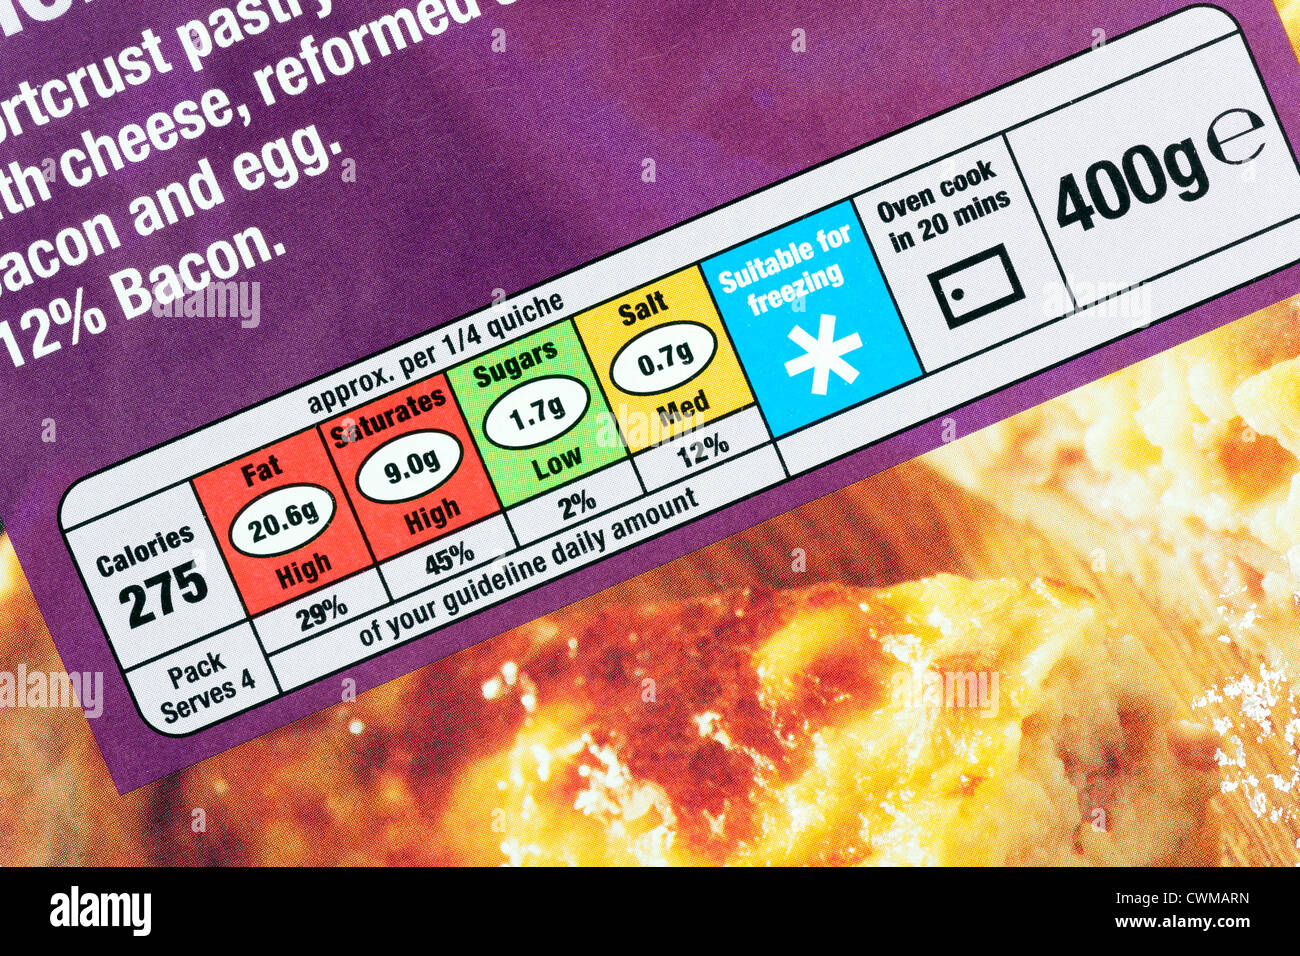 Gli ingredienti e le informazioni nutrizionali su imballaggi alimentari Foto Stock